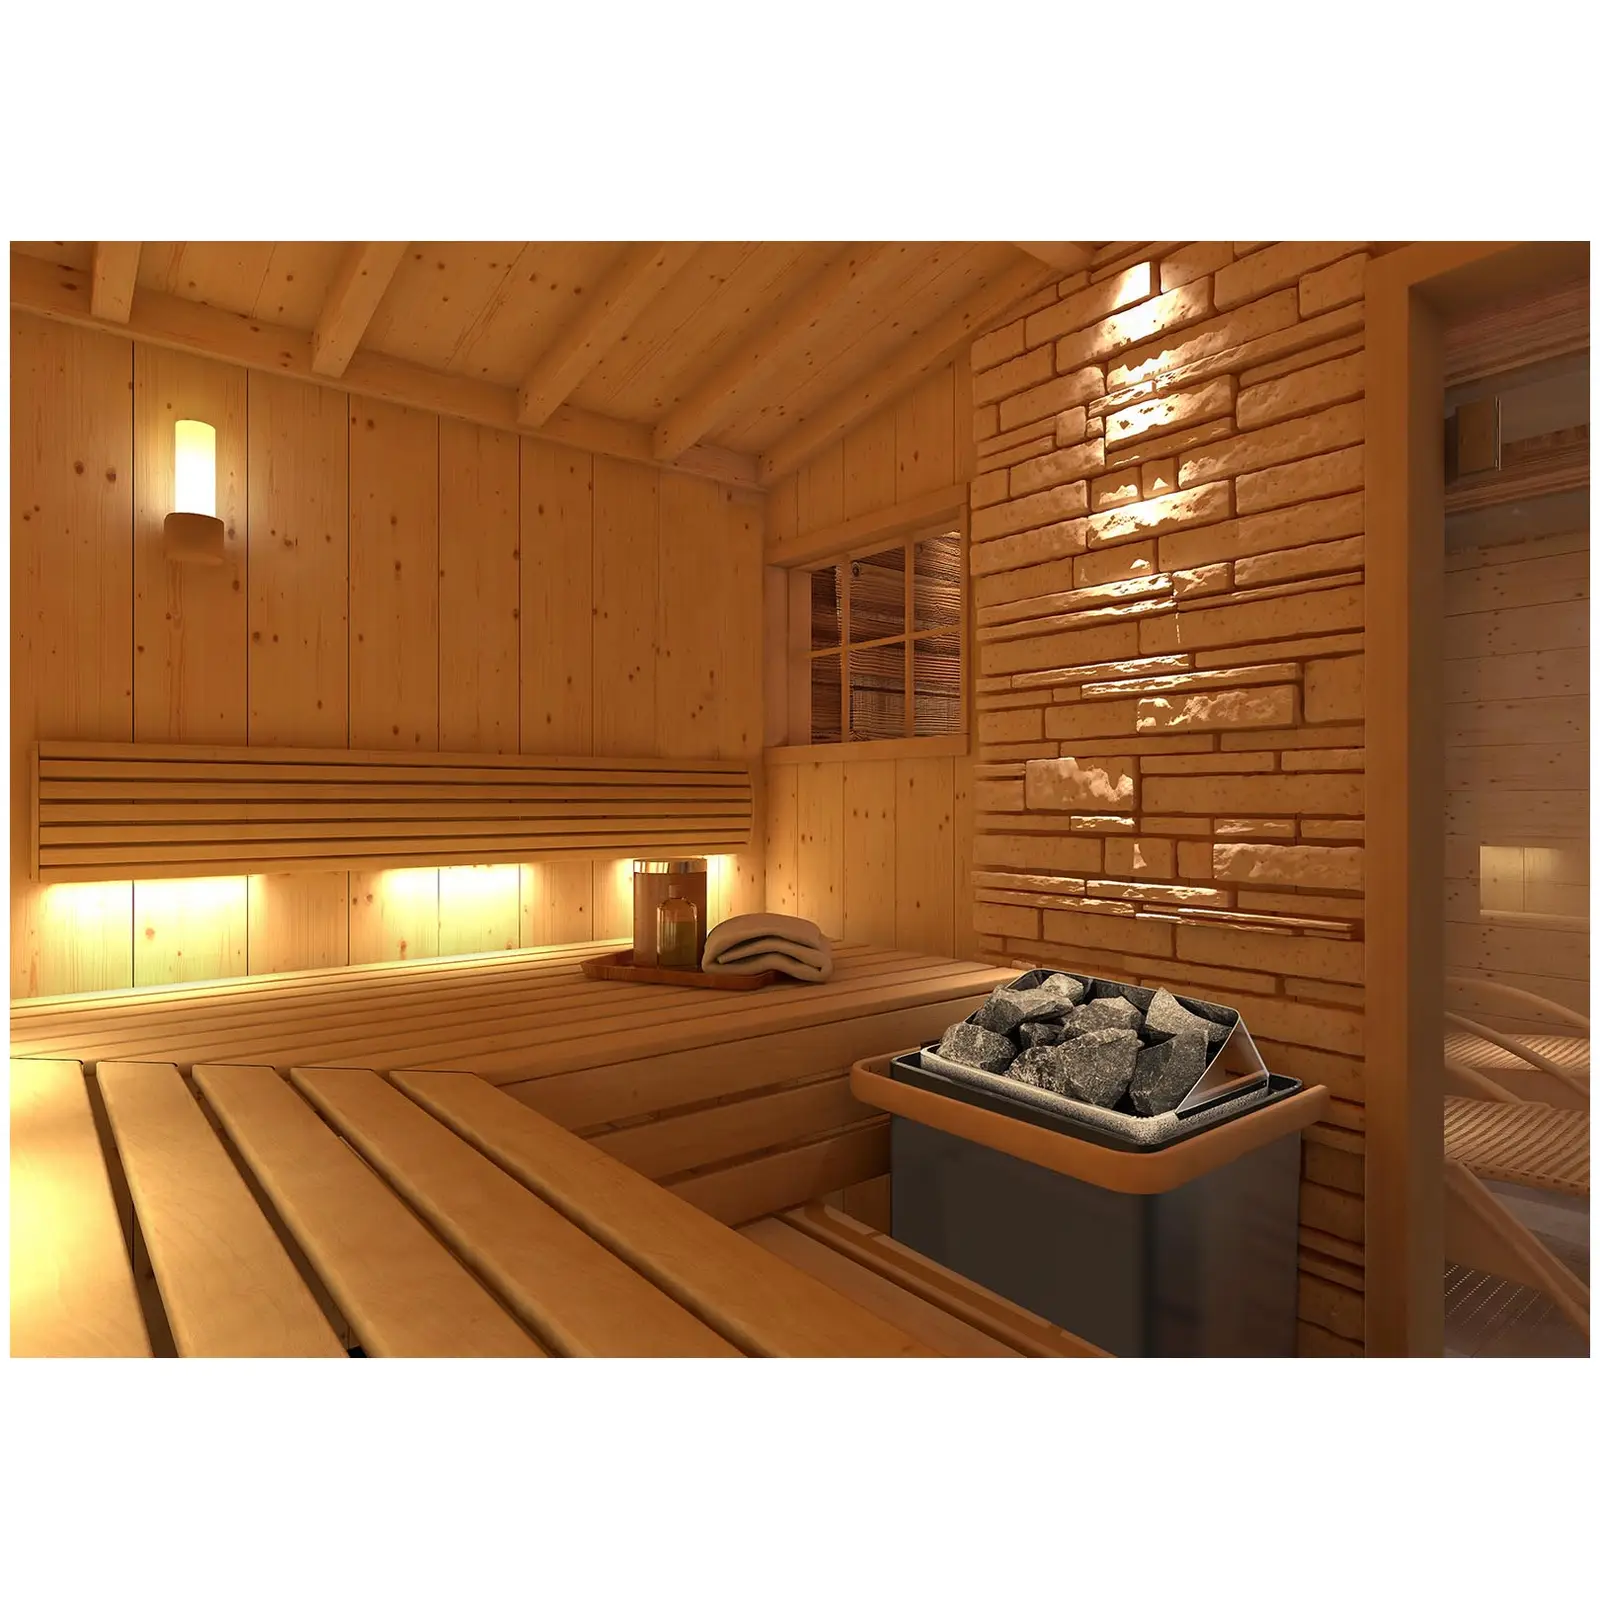 Piec do sauny - elektryczny - 8 kW